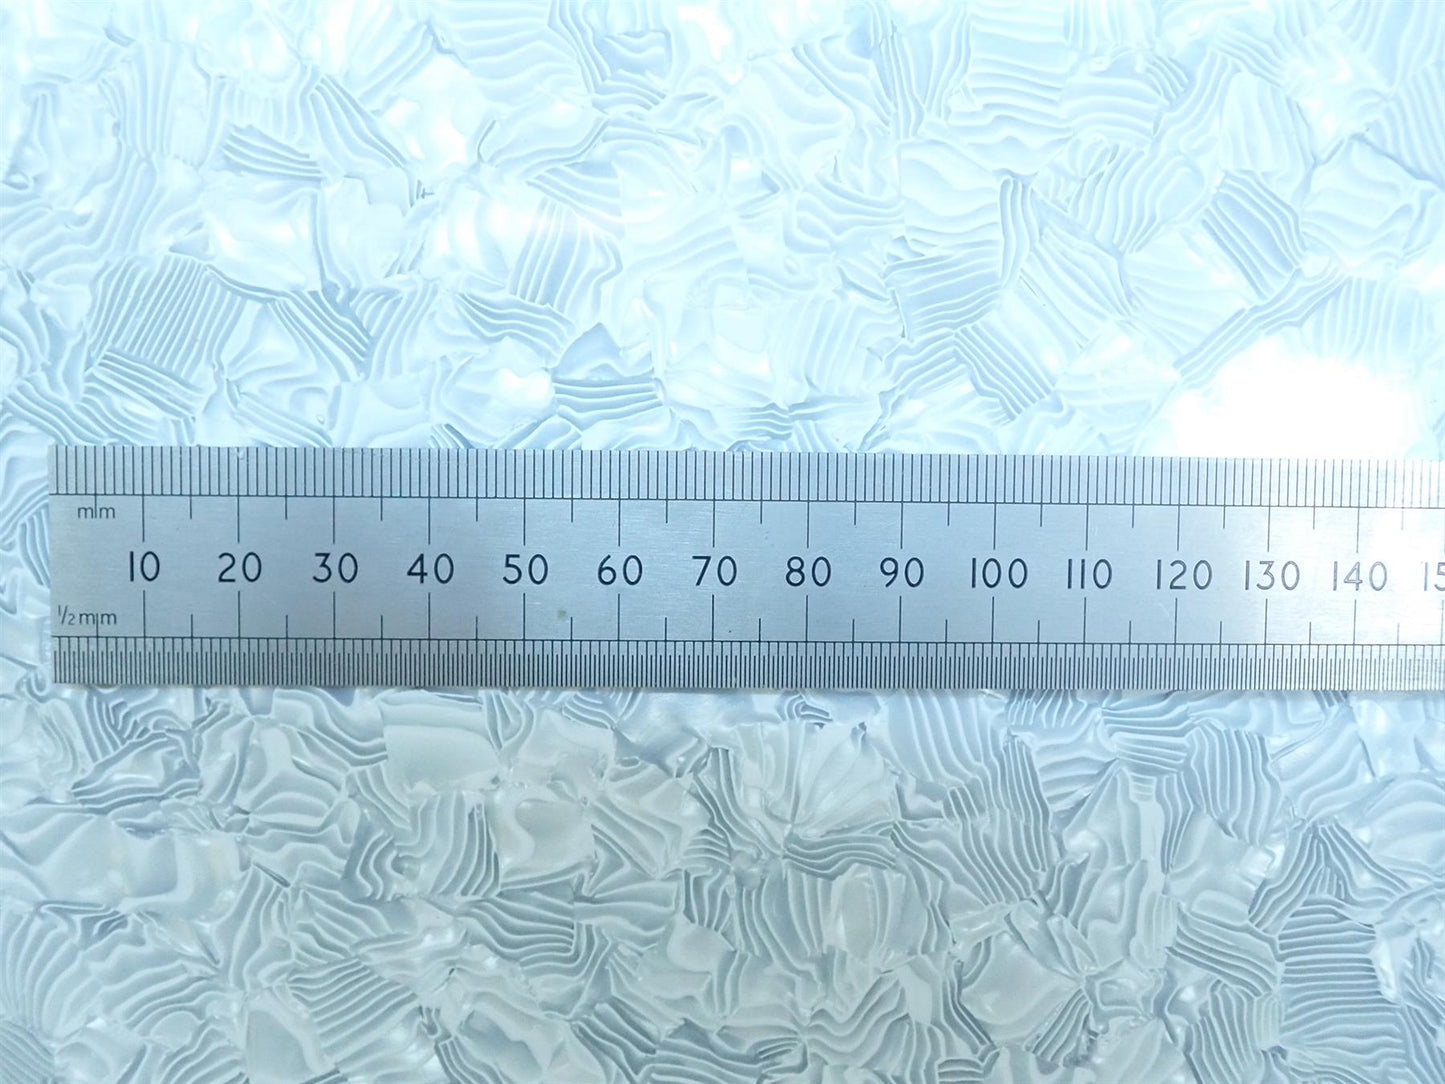 Incudo White Large Pearloid Celluloid Veneer / Wrap - 1600x700x0.17mm (63x27.56x0.007")